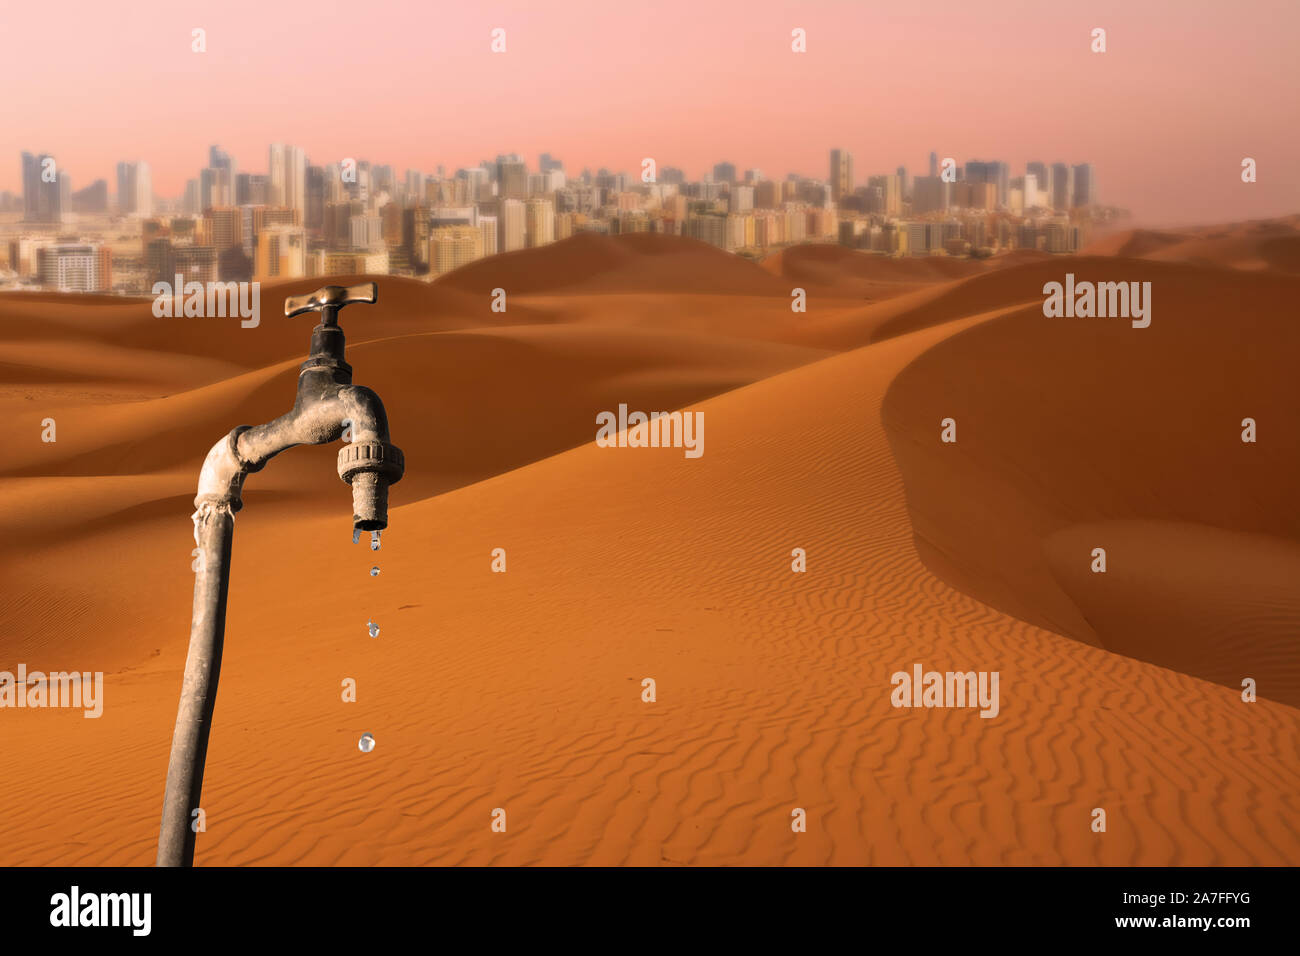 Robinet d'égoutture, le désert et les toits de grande ville en arrière-plan, l'idée du réchauffement de la planète, la rareté de l'eau et les progrès de la désertification Banque D'Images